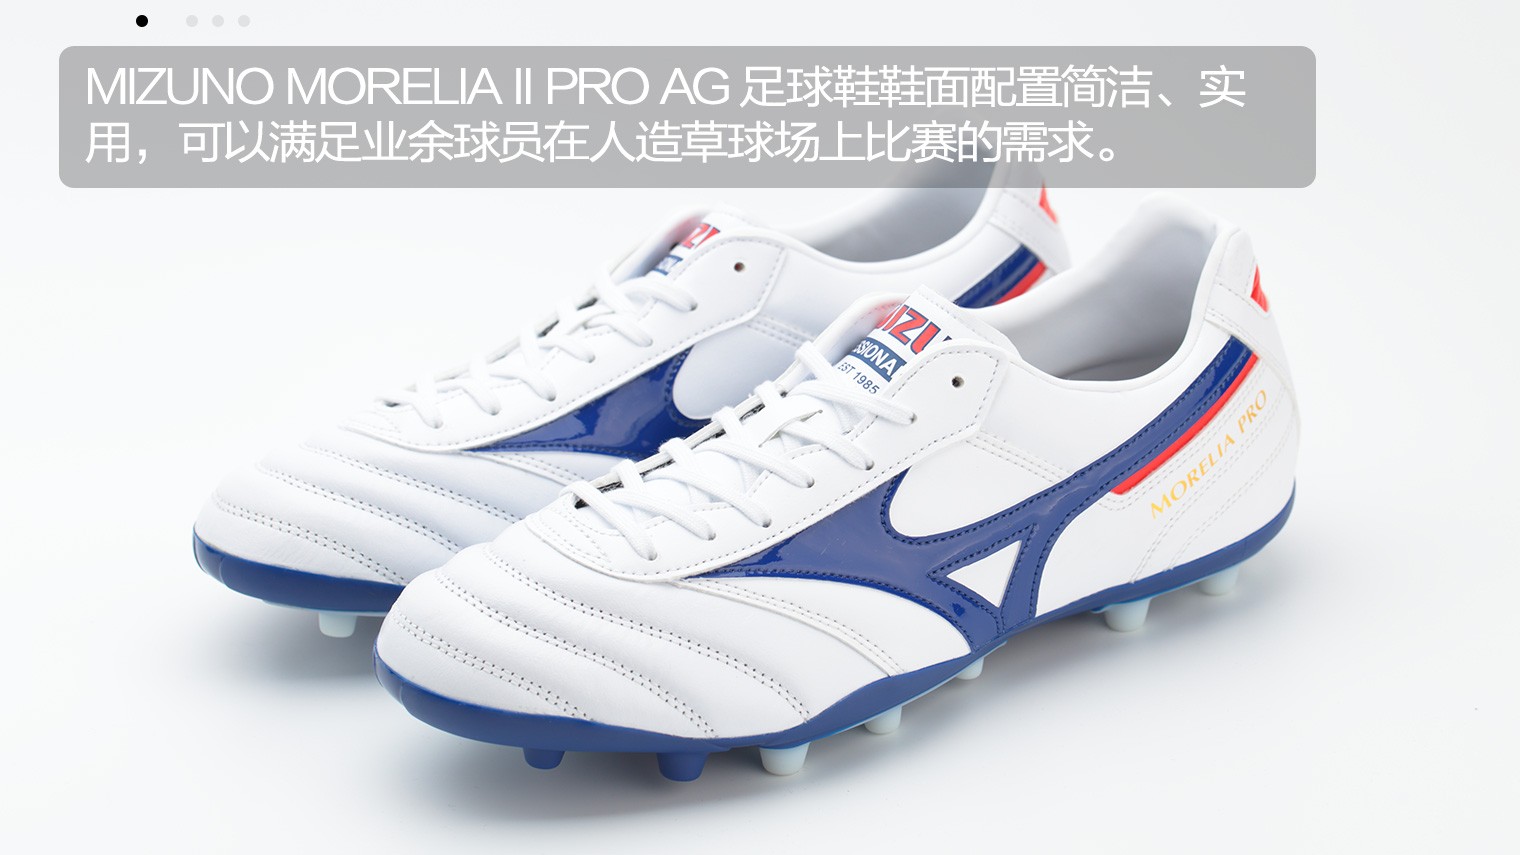 美津浓morelia ii pro ag足球鞋鞋面使用半袋鼠皮配置,前掌主要触球